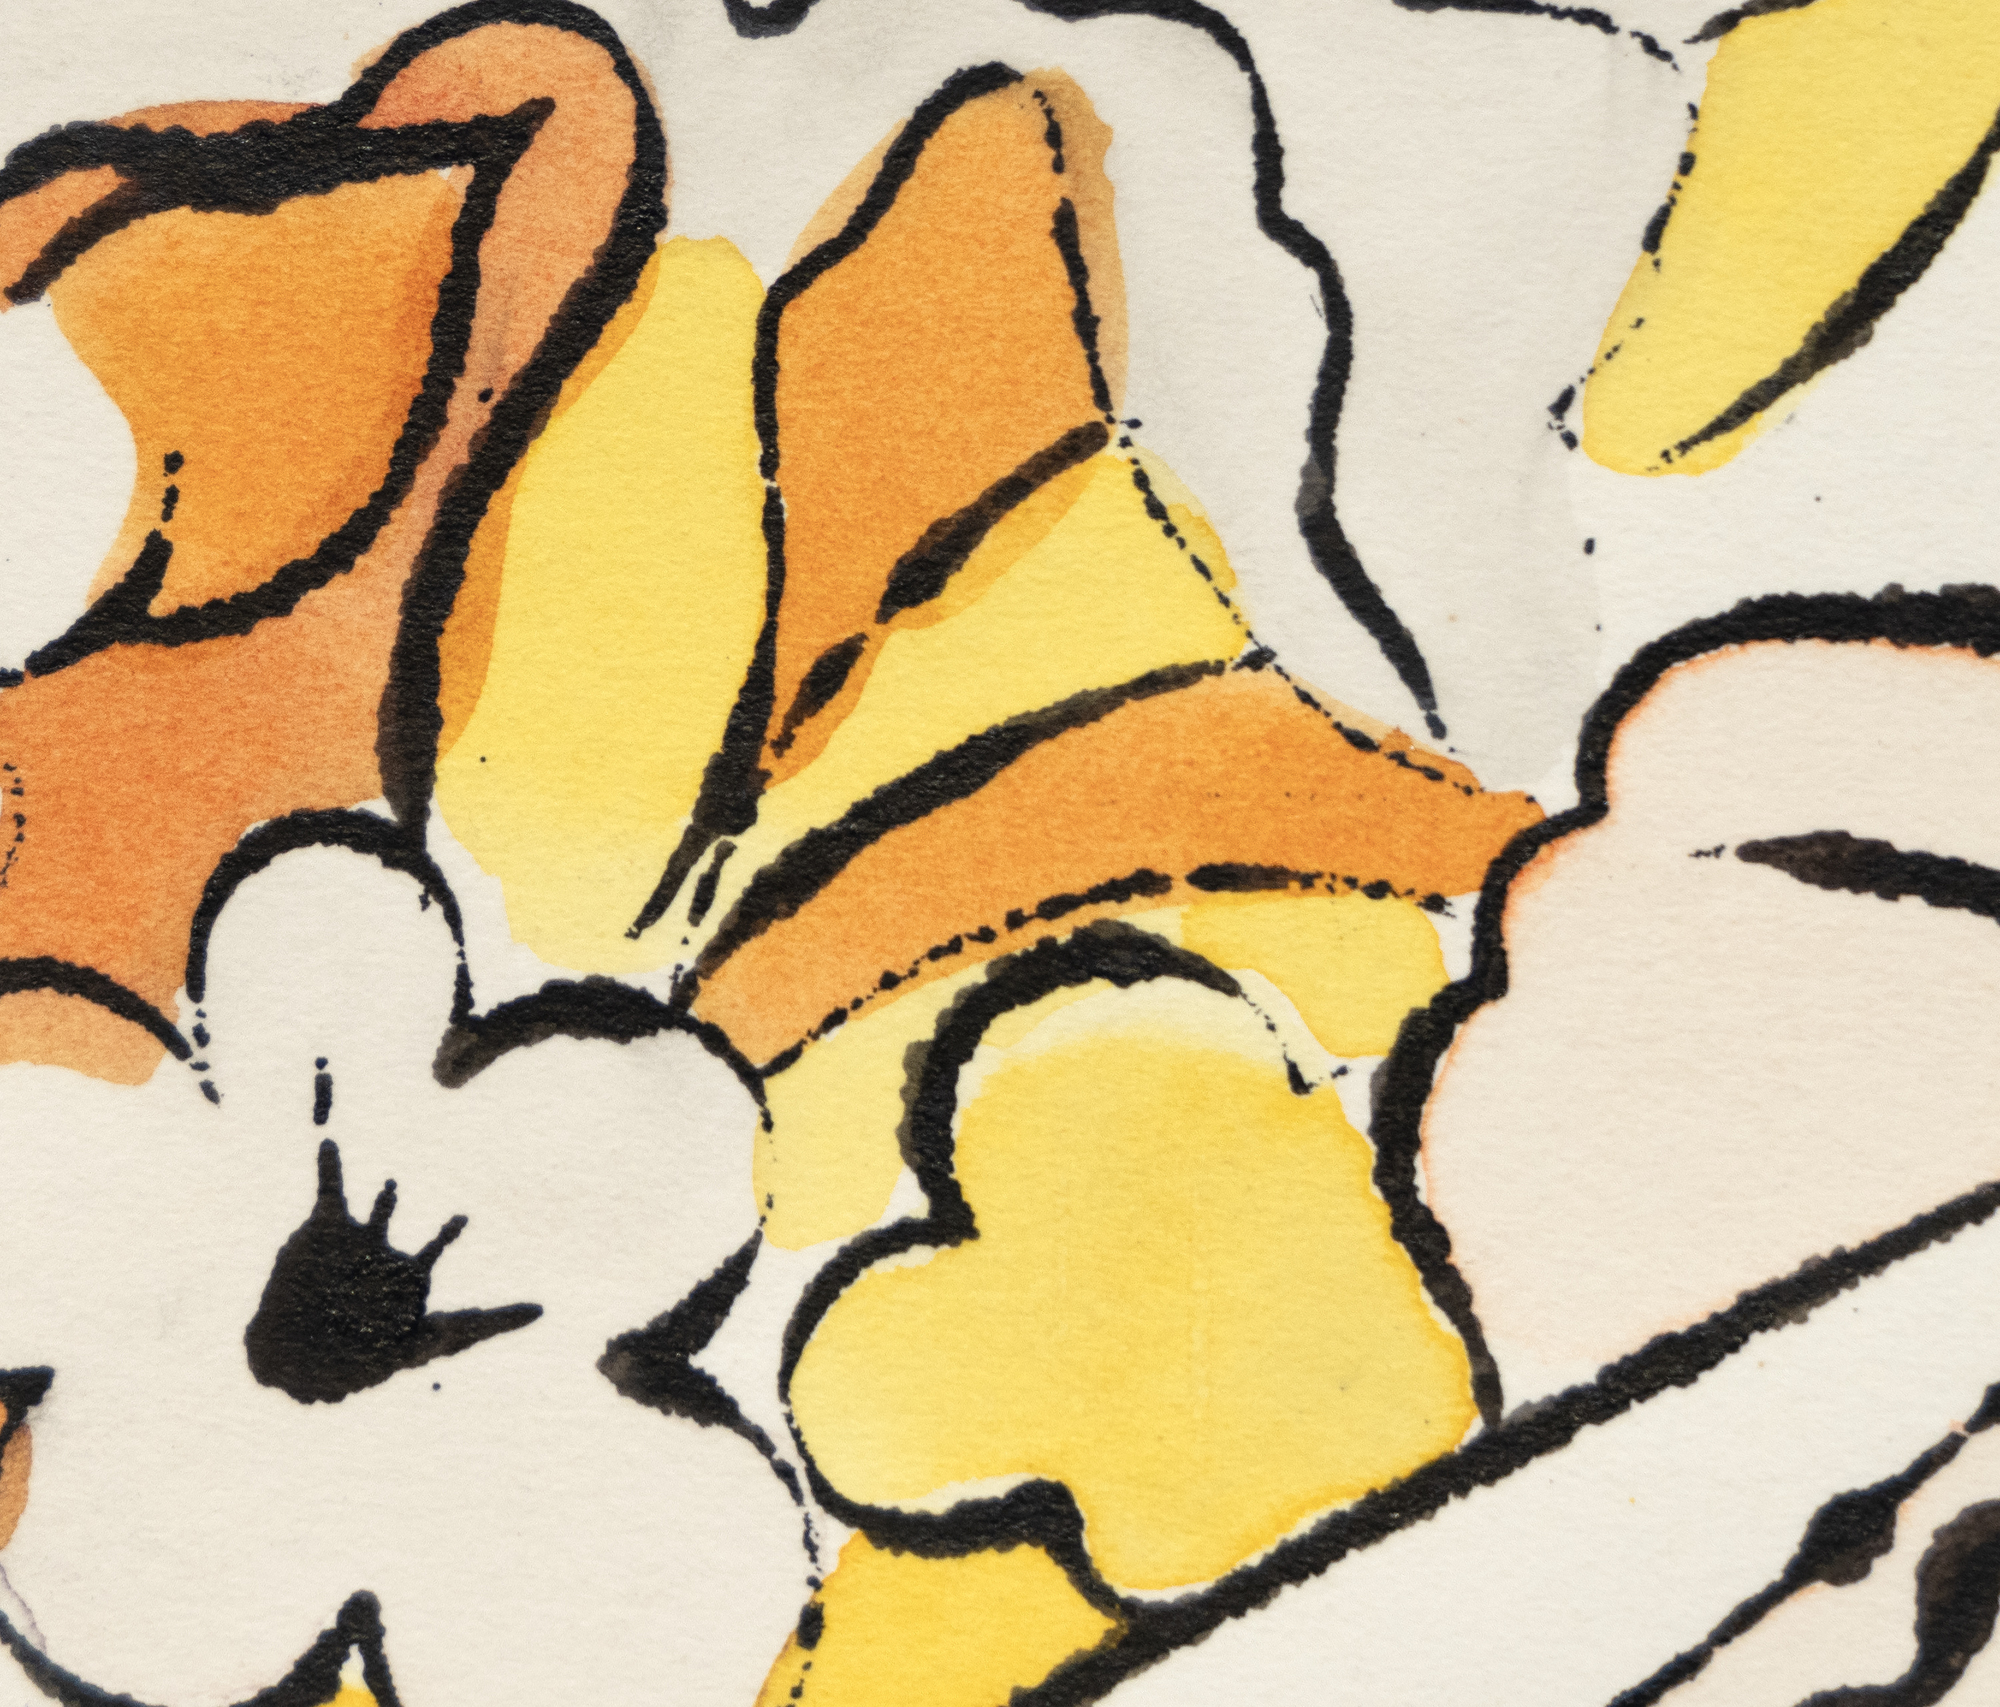 Die oft übersehenen Tusche- und Farbstoffzeichnungen Warhols zeigen seine Fähigkeit, Motive und Elemente mit sparsamem Strich auf das Wesentliche zu reduzieren, und zeichnen sich durch eine wunderbare Verspieltheit aus. Sie erinnern uns oft daran, dass Kunst am besten Humor und Laune vermitteln kann, wenn sie unkompliziert und frei fließend ist. Untitled, Flowers ist ein Vorläufer seines berühmten Vogue-Layouts von 1960, das Zeichnungen von Blumen in fluoreszierenden Farben kombiniert. Es nimmt Warhols frühe Neigung vorweg, Linie und Farbe zu trennen, ein Mittel, das später seinen Siebdrucken ihre abstrakte Unmittelbarkeit verleihen sollte.